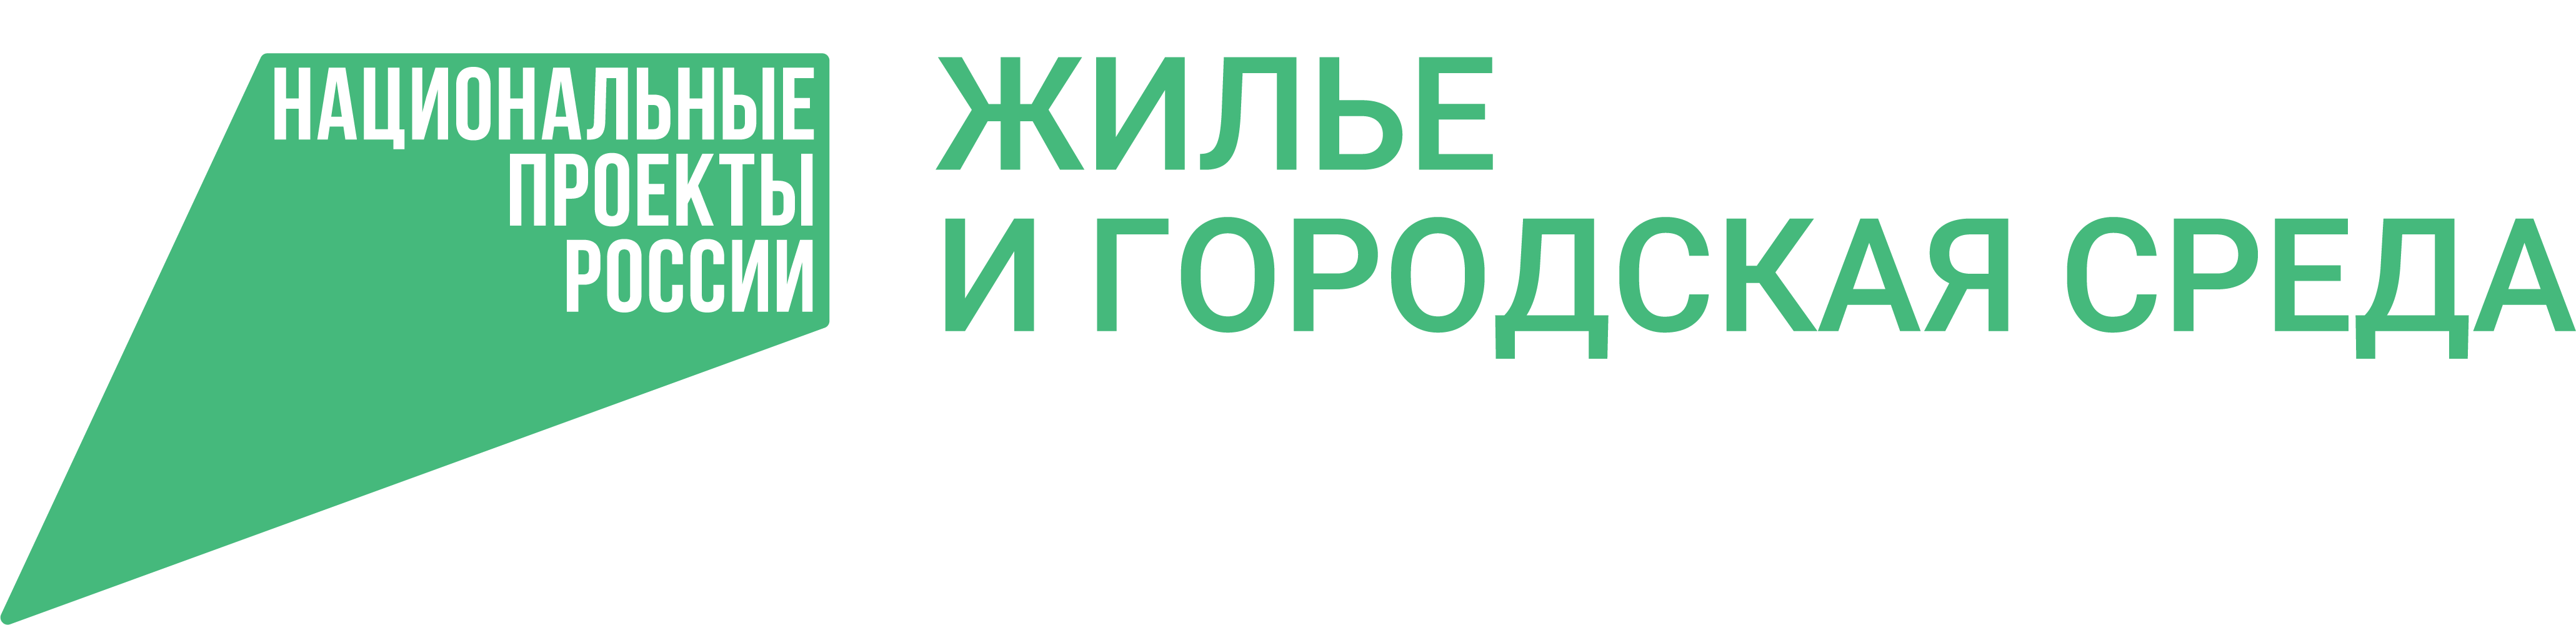 Логотип национального проекта «Жильё и городская среда»